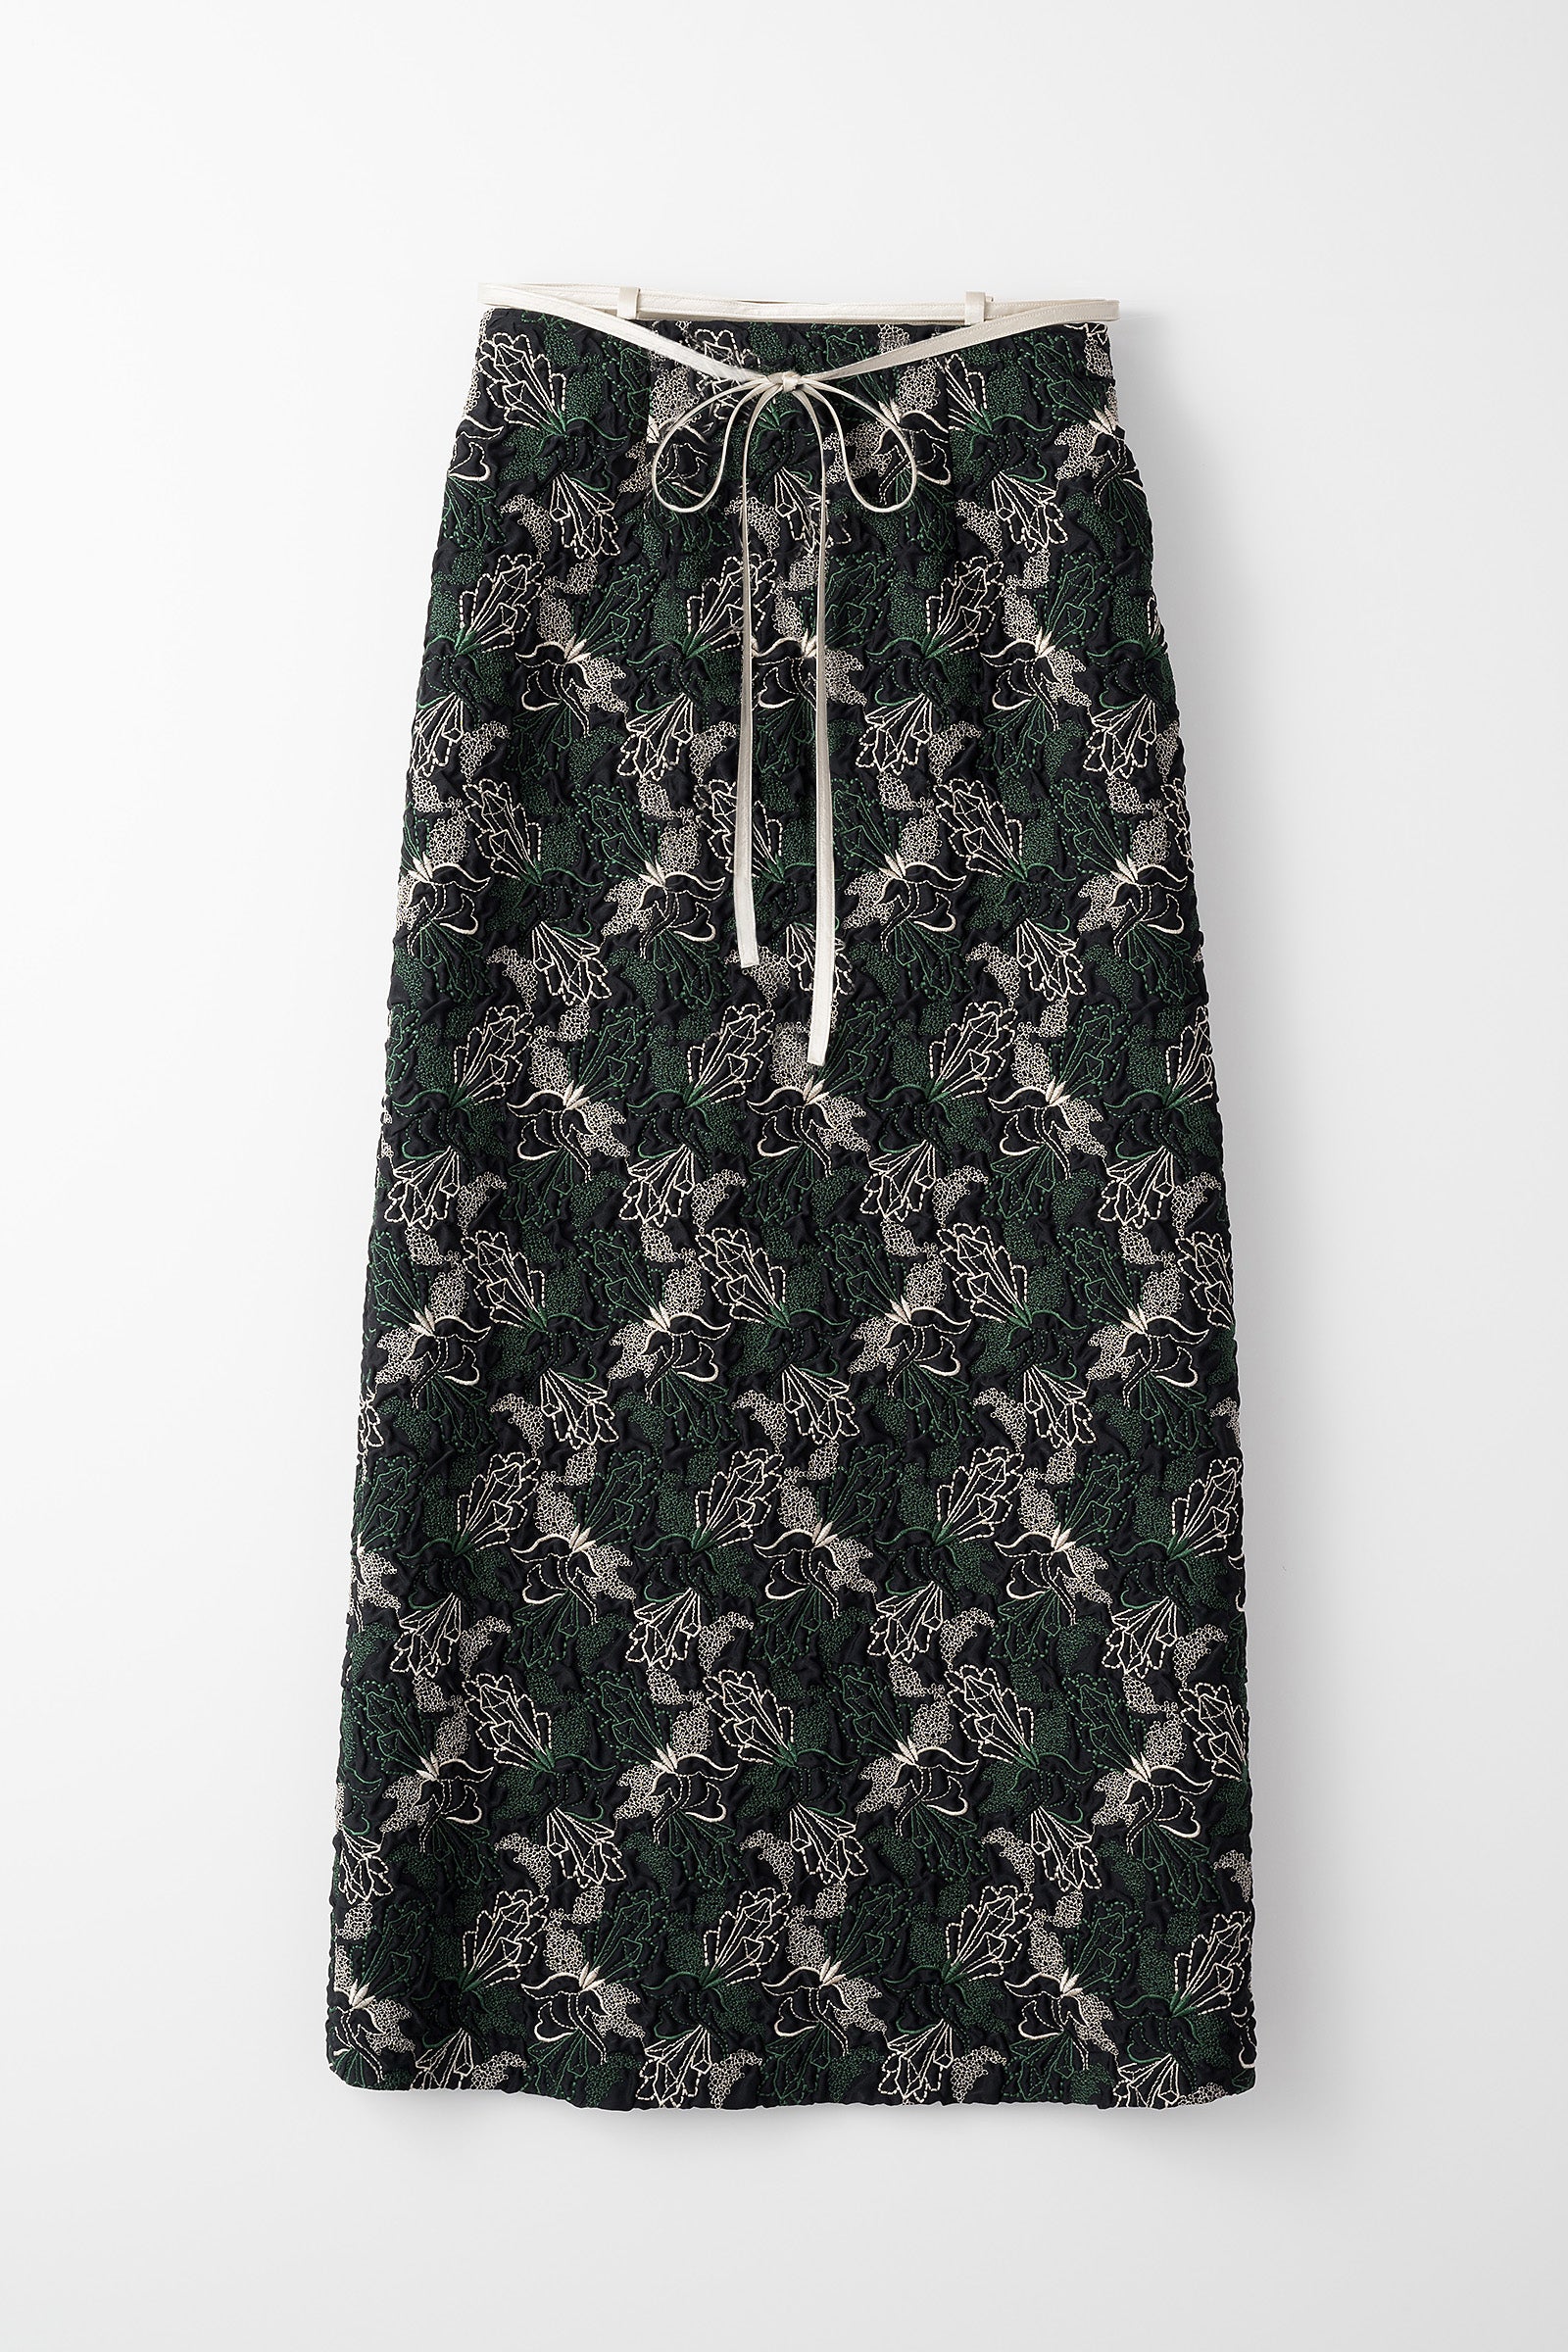 11,880円【超美品】MURRAL Quartz embroidery skirt サイズ1